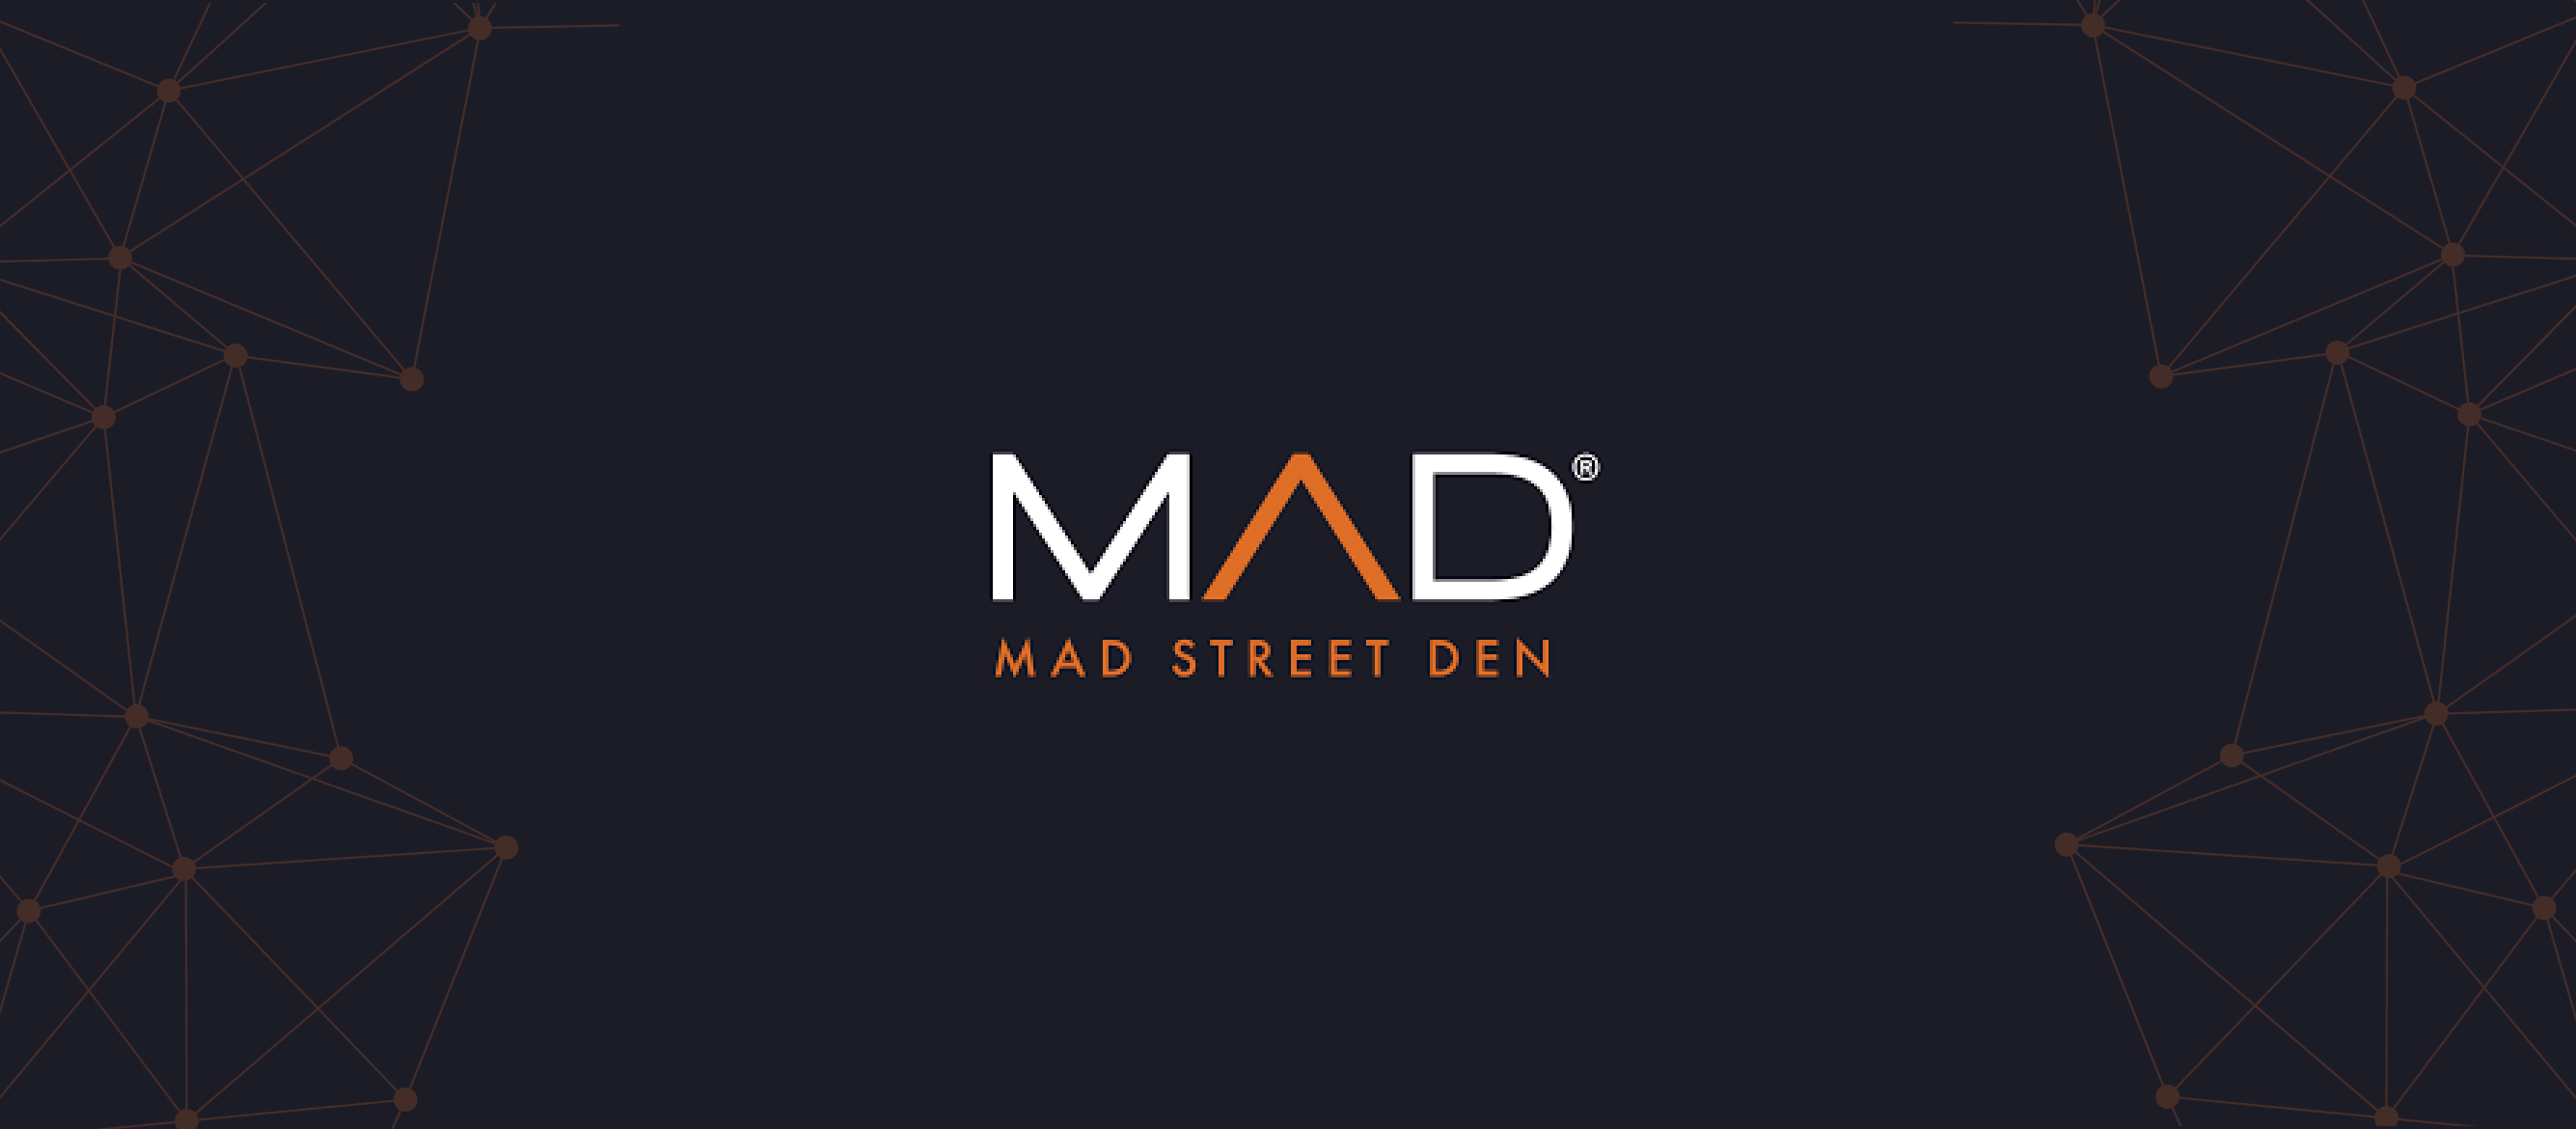 Mad street den | Banner